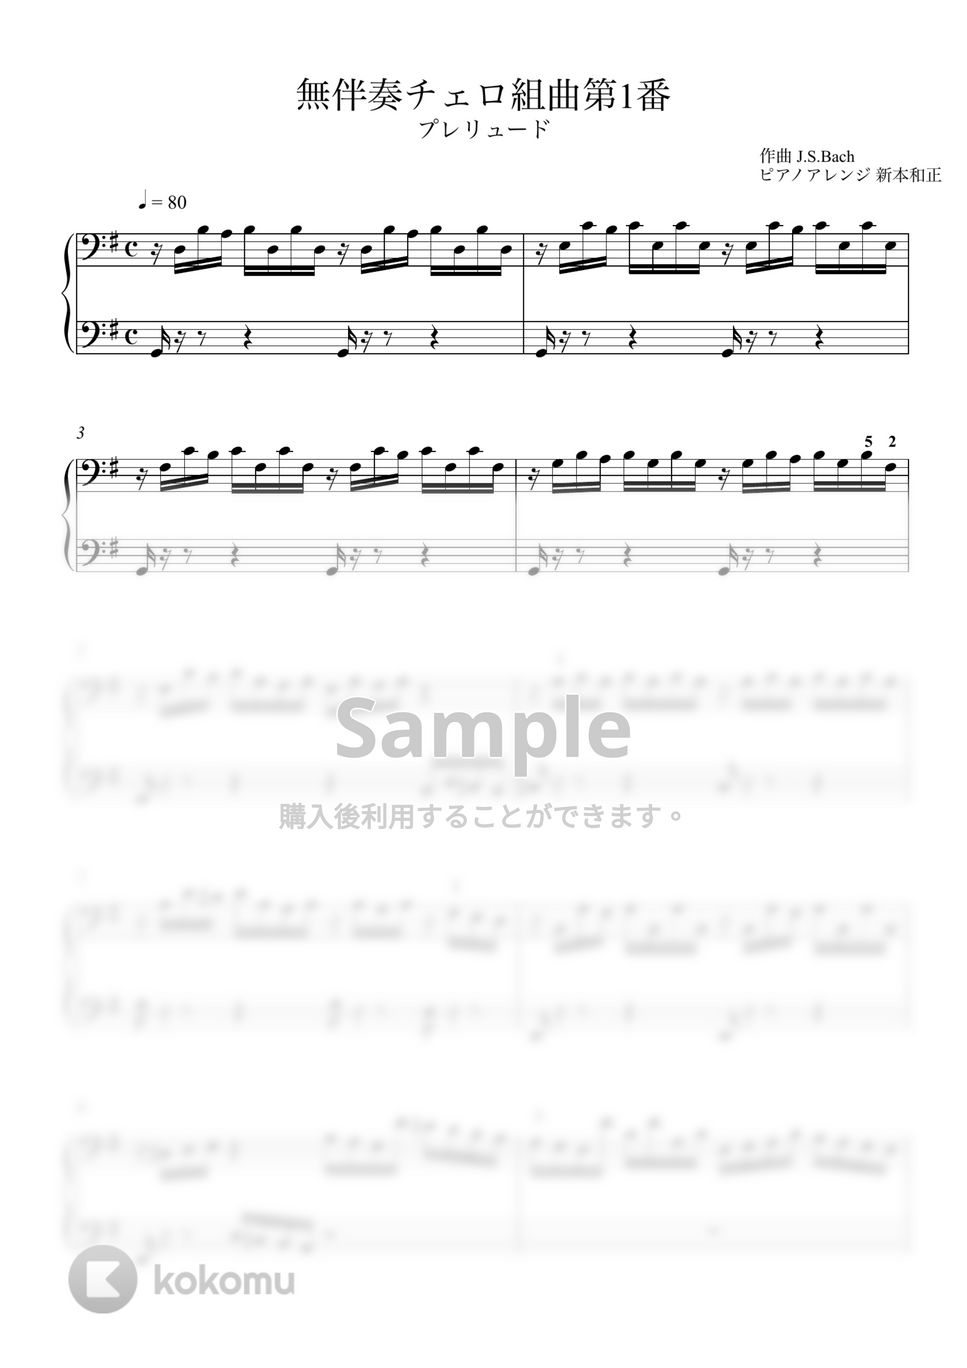 J.S.Bach - 無伴奏チェロ組曲第1番 プレリュード (ピアノver.) by 新本和正